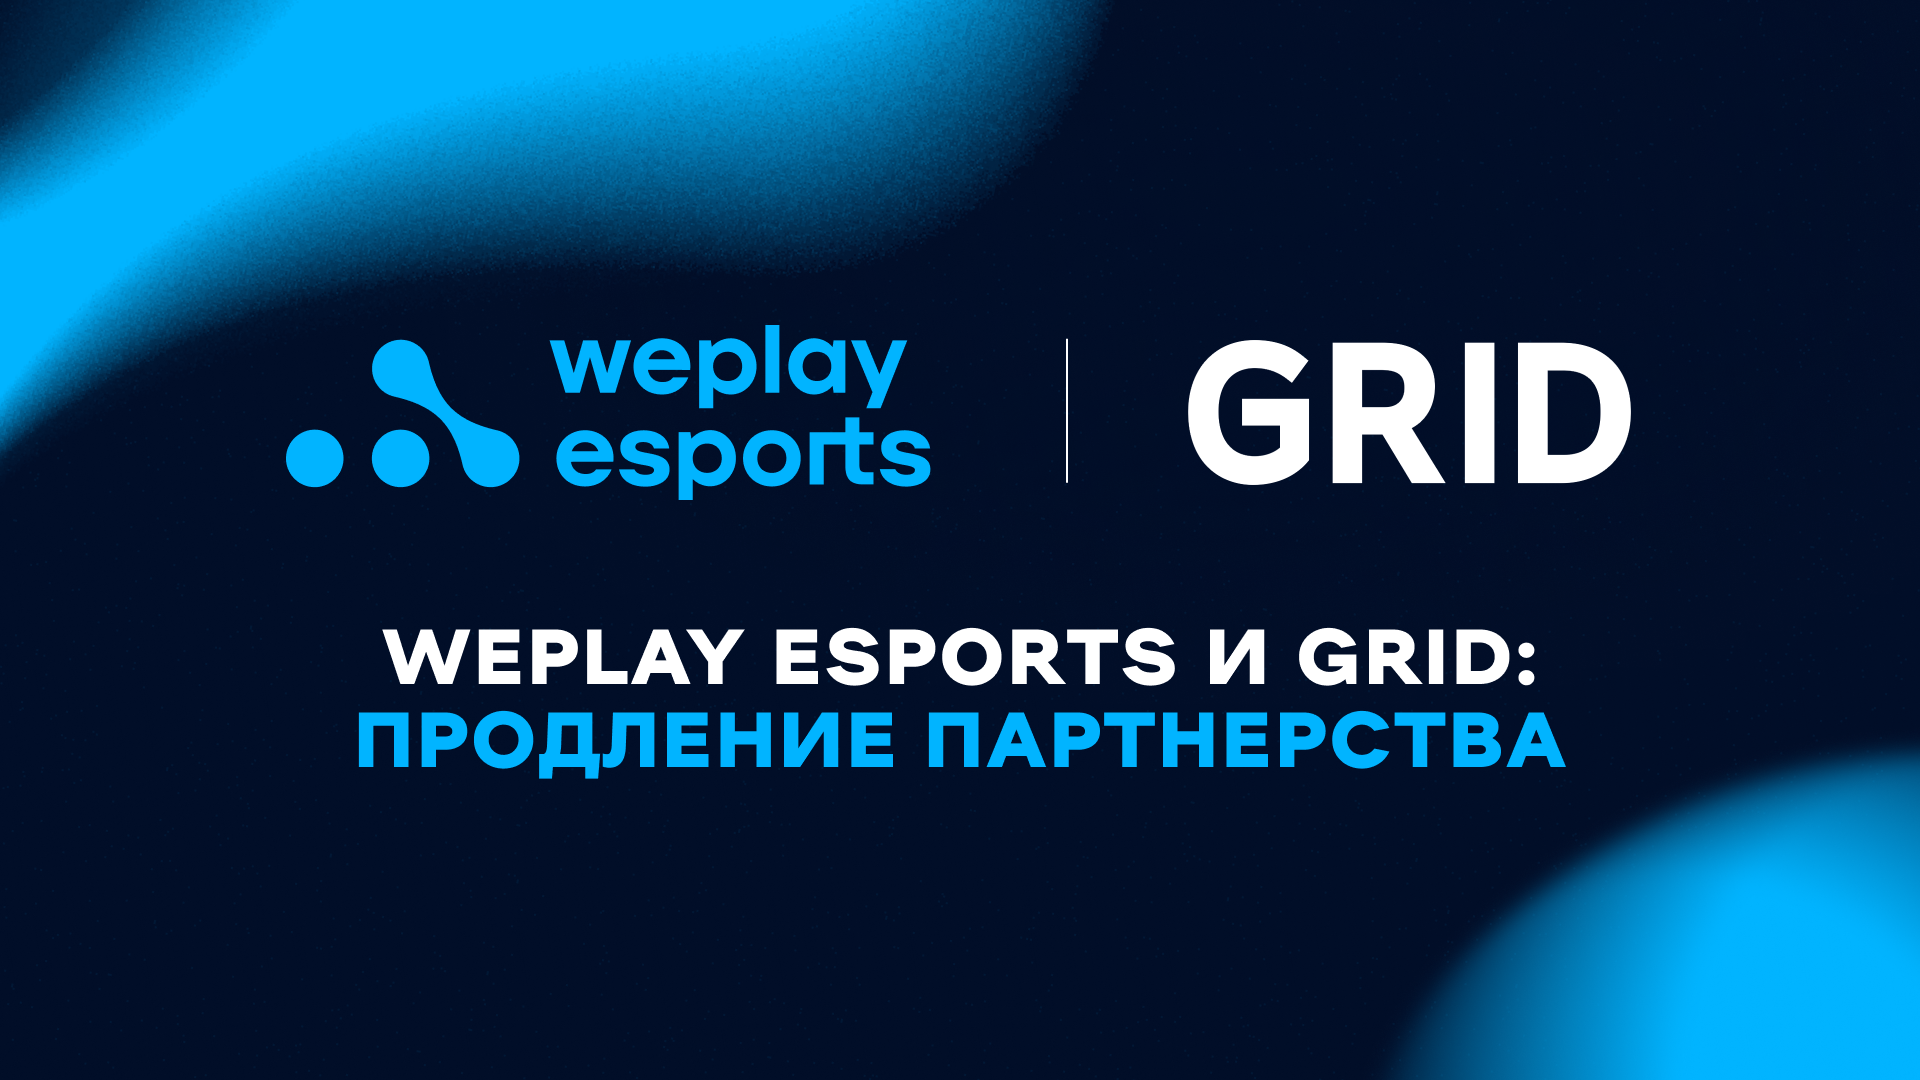 WePlay Esports и GRID: продление партнерства. Изображение: WePlay Holding